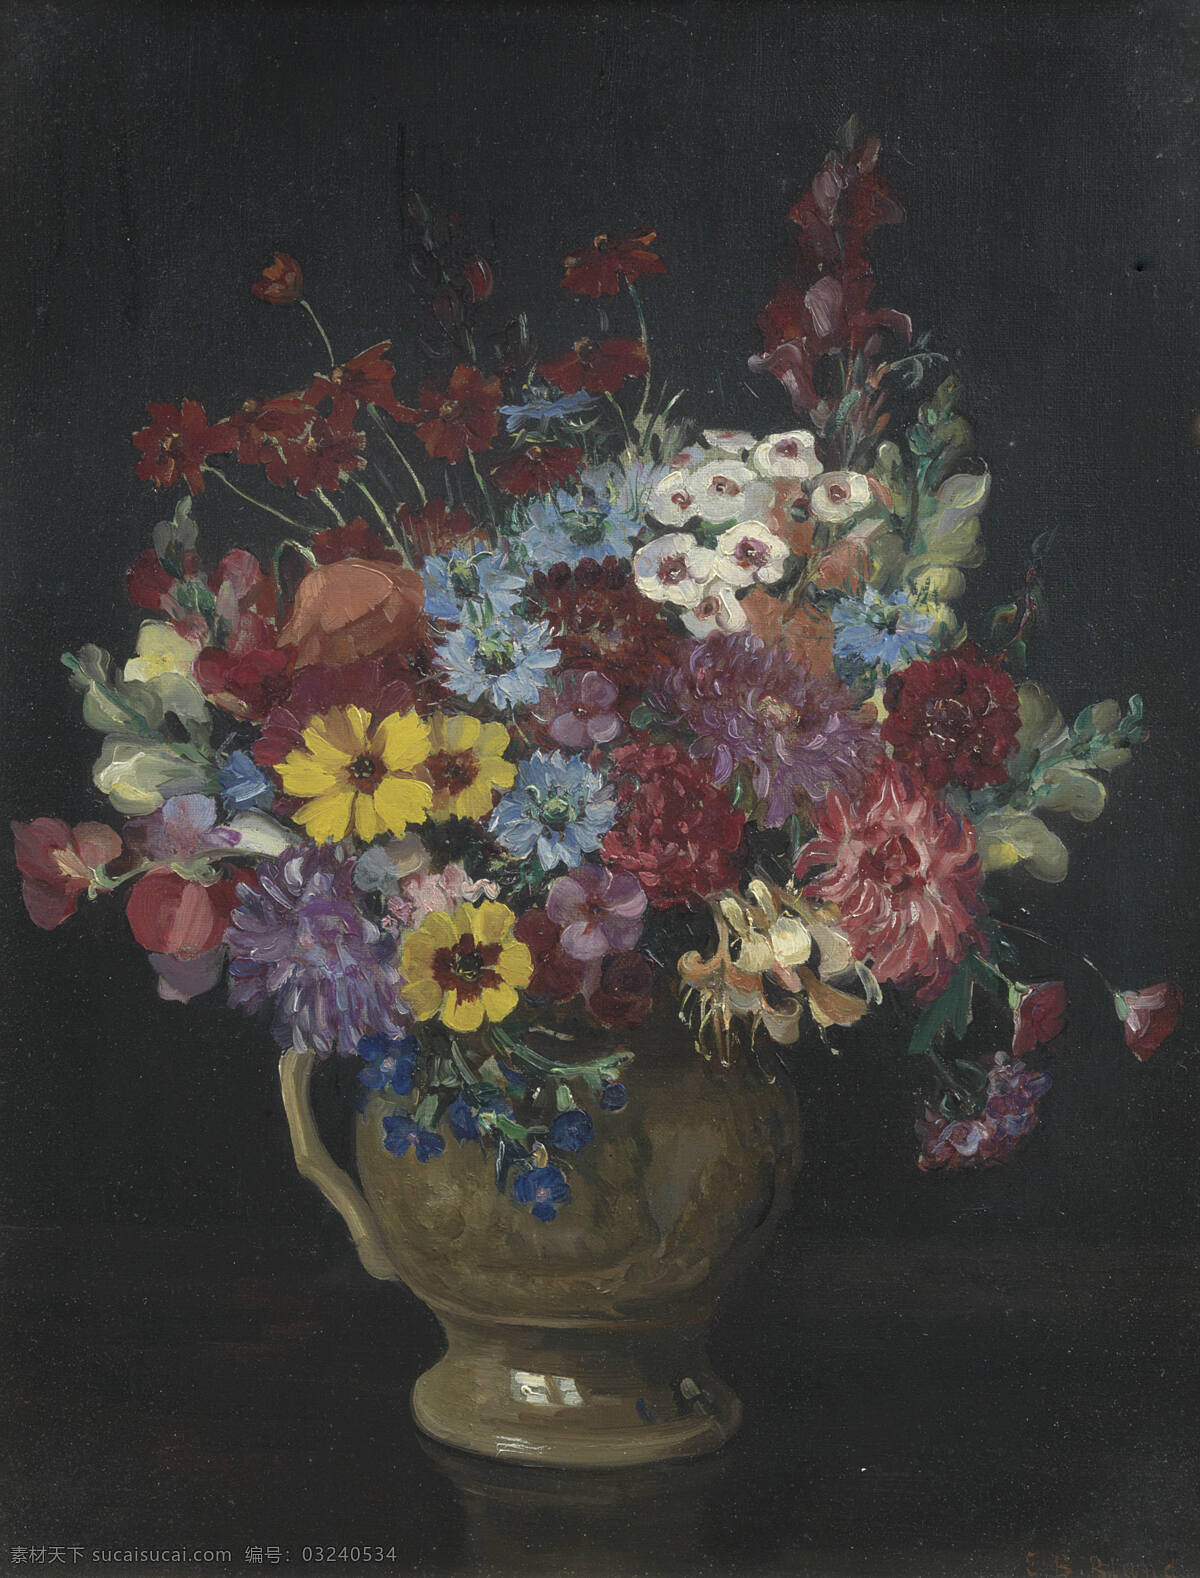 静物鲜花 永恒之美 混搭鲜花 水罐 桌子 暗色调 19世纪油画 油画 绘画书法 文化艺术